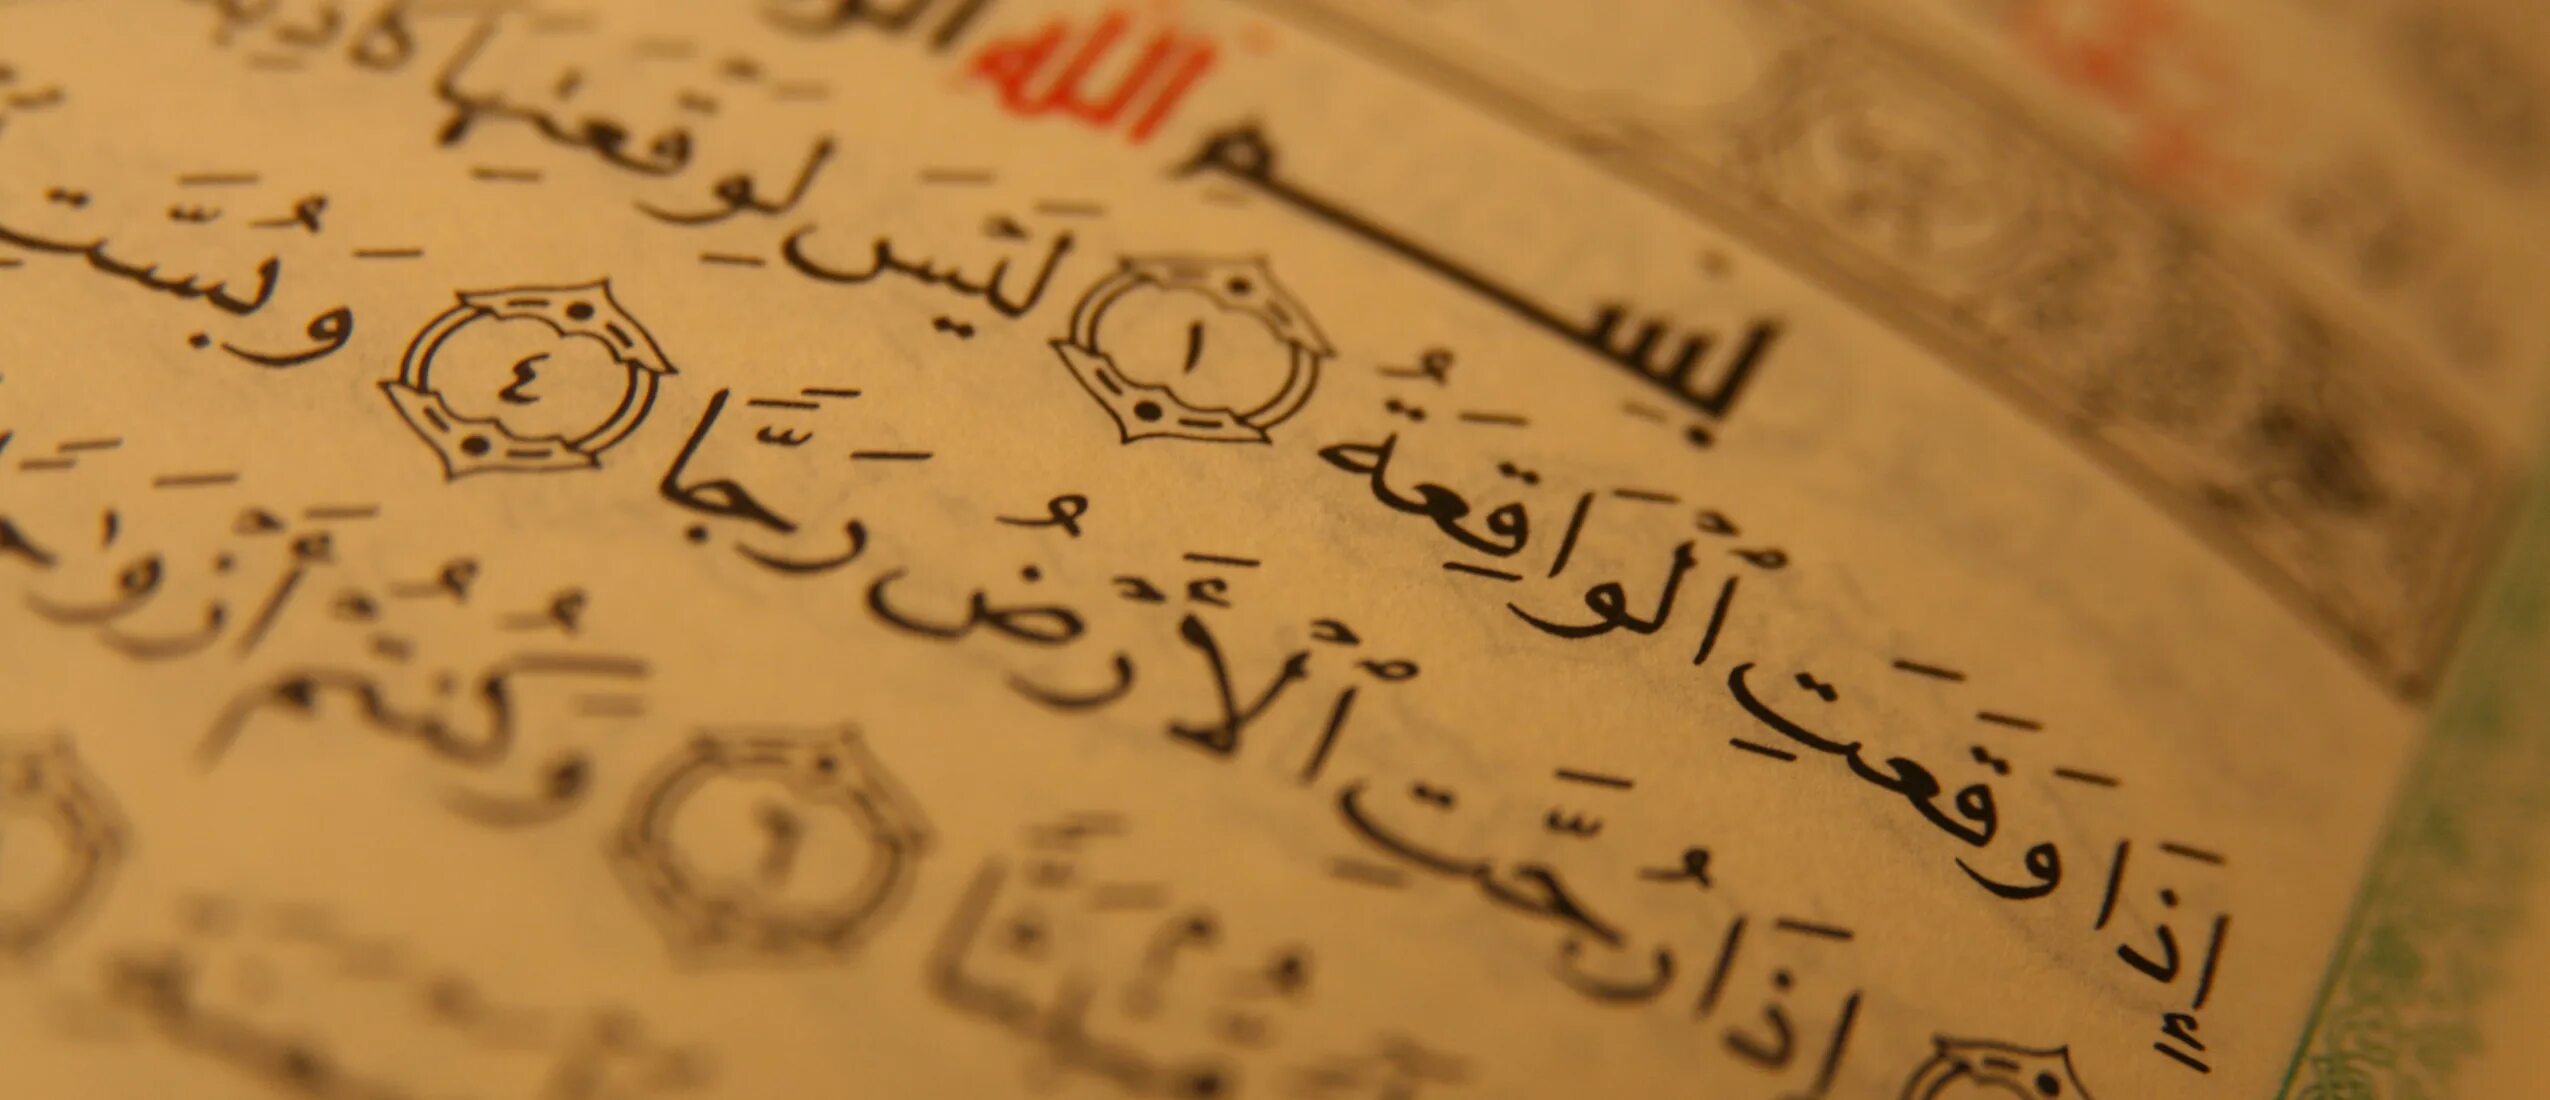 17 аят корана. Размышление над Кораном. Знания прежде слов и дел на арабском картинки.